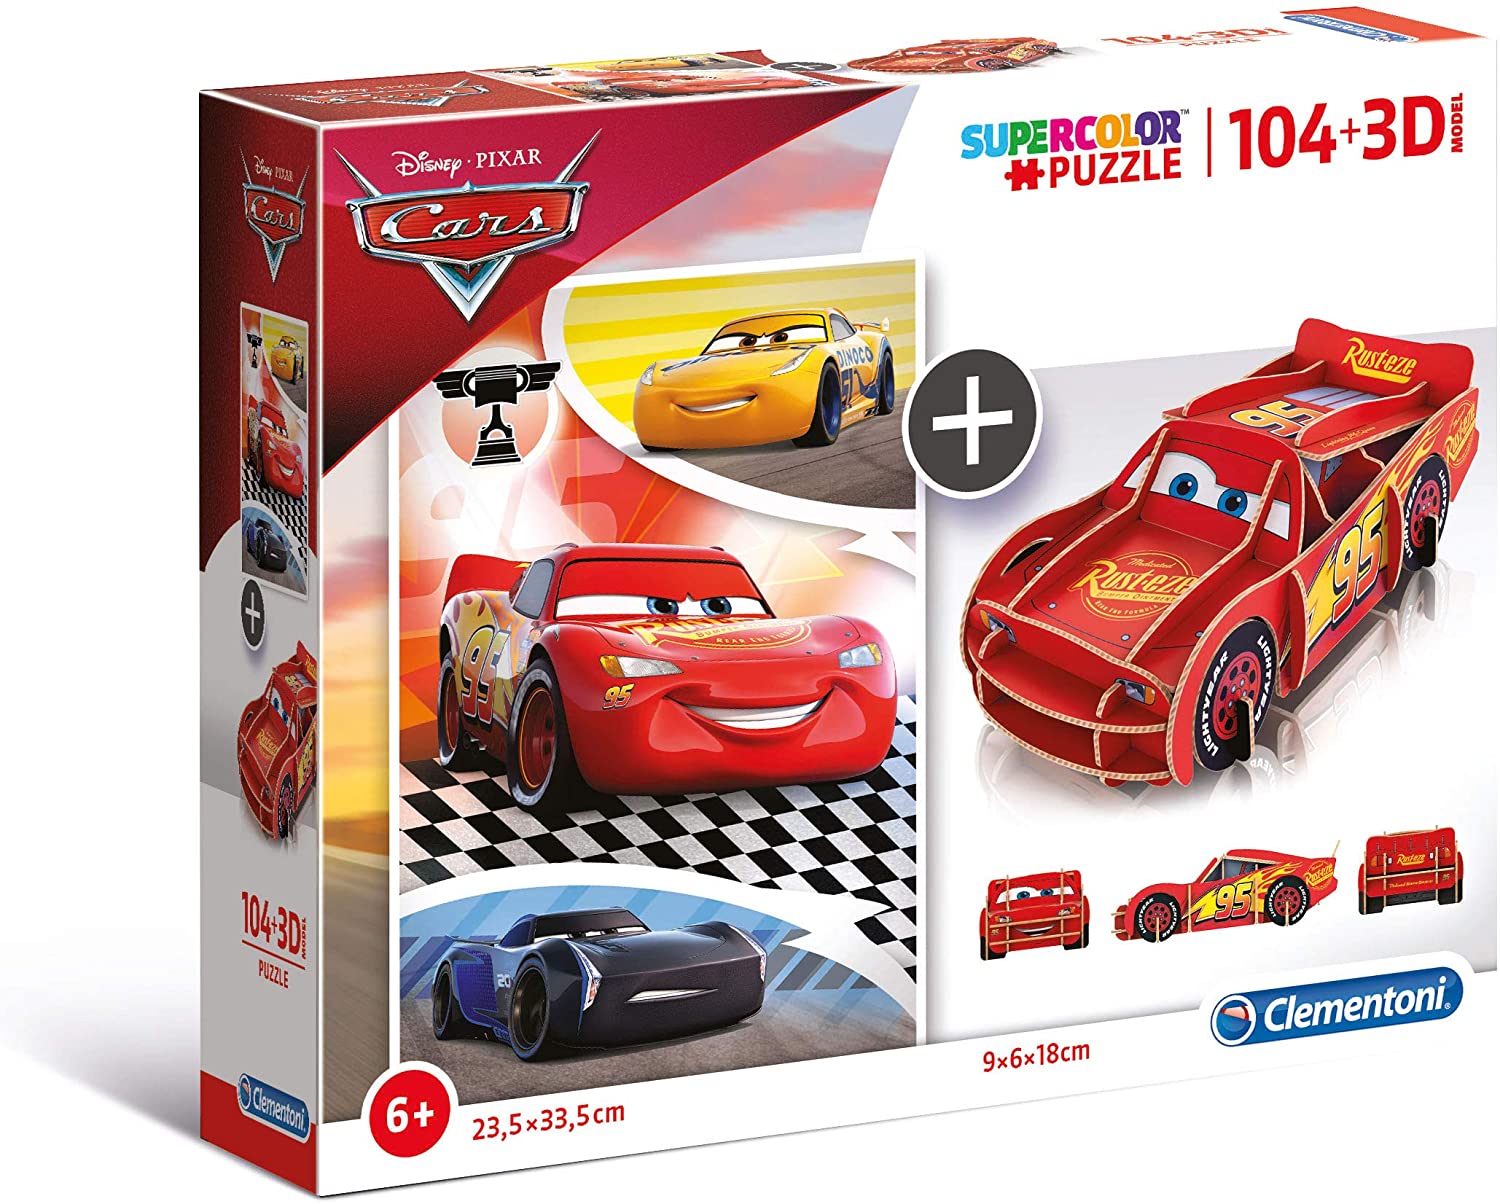 CLEMENTONI - Disney Pixar Cars 104 Pieces + 3D Puzzle Super Color